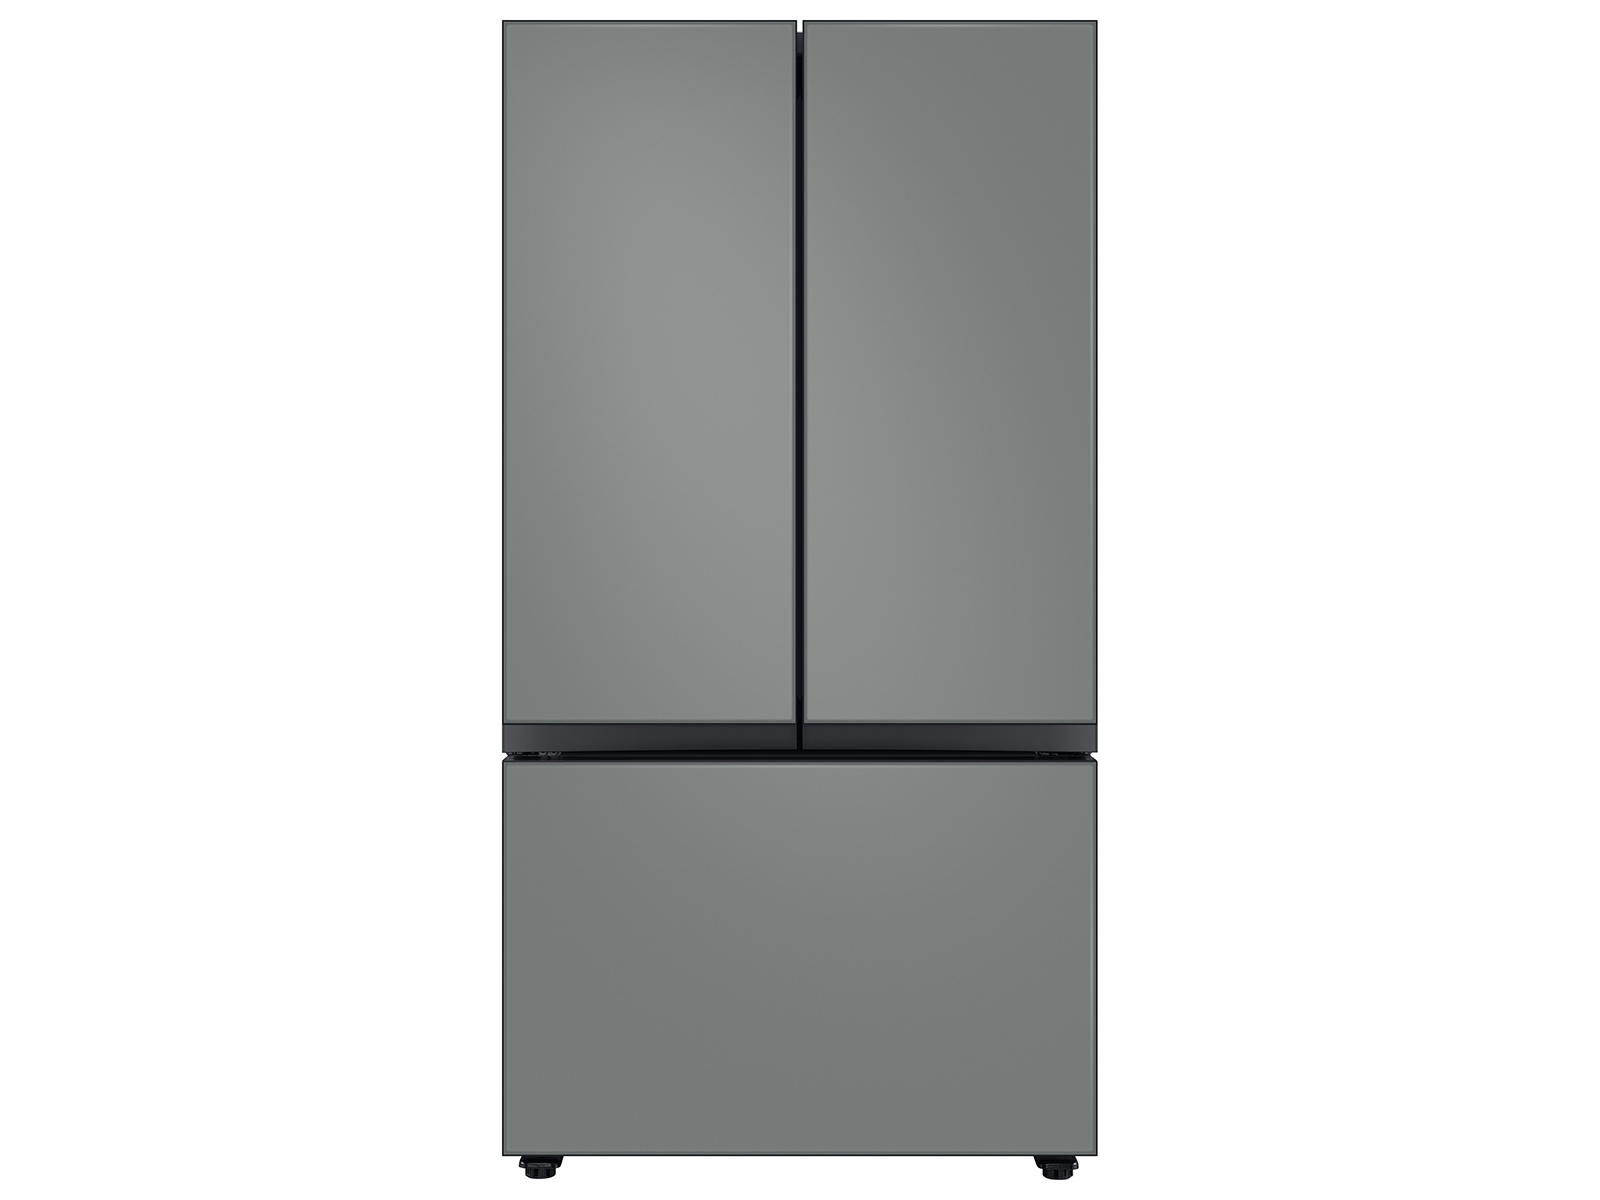 Bespoke 3-Door French Door Refrigerator (24 cu. ft.) with Beverage Center™ in Grey Glass